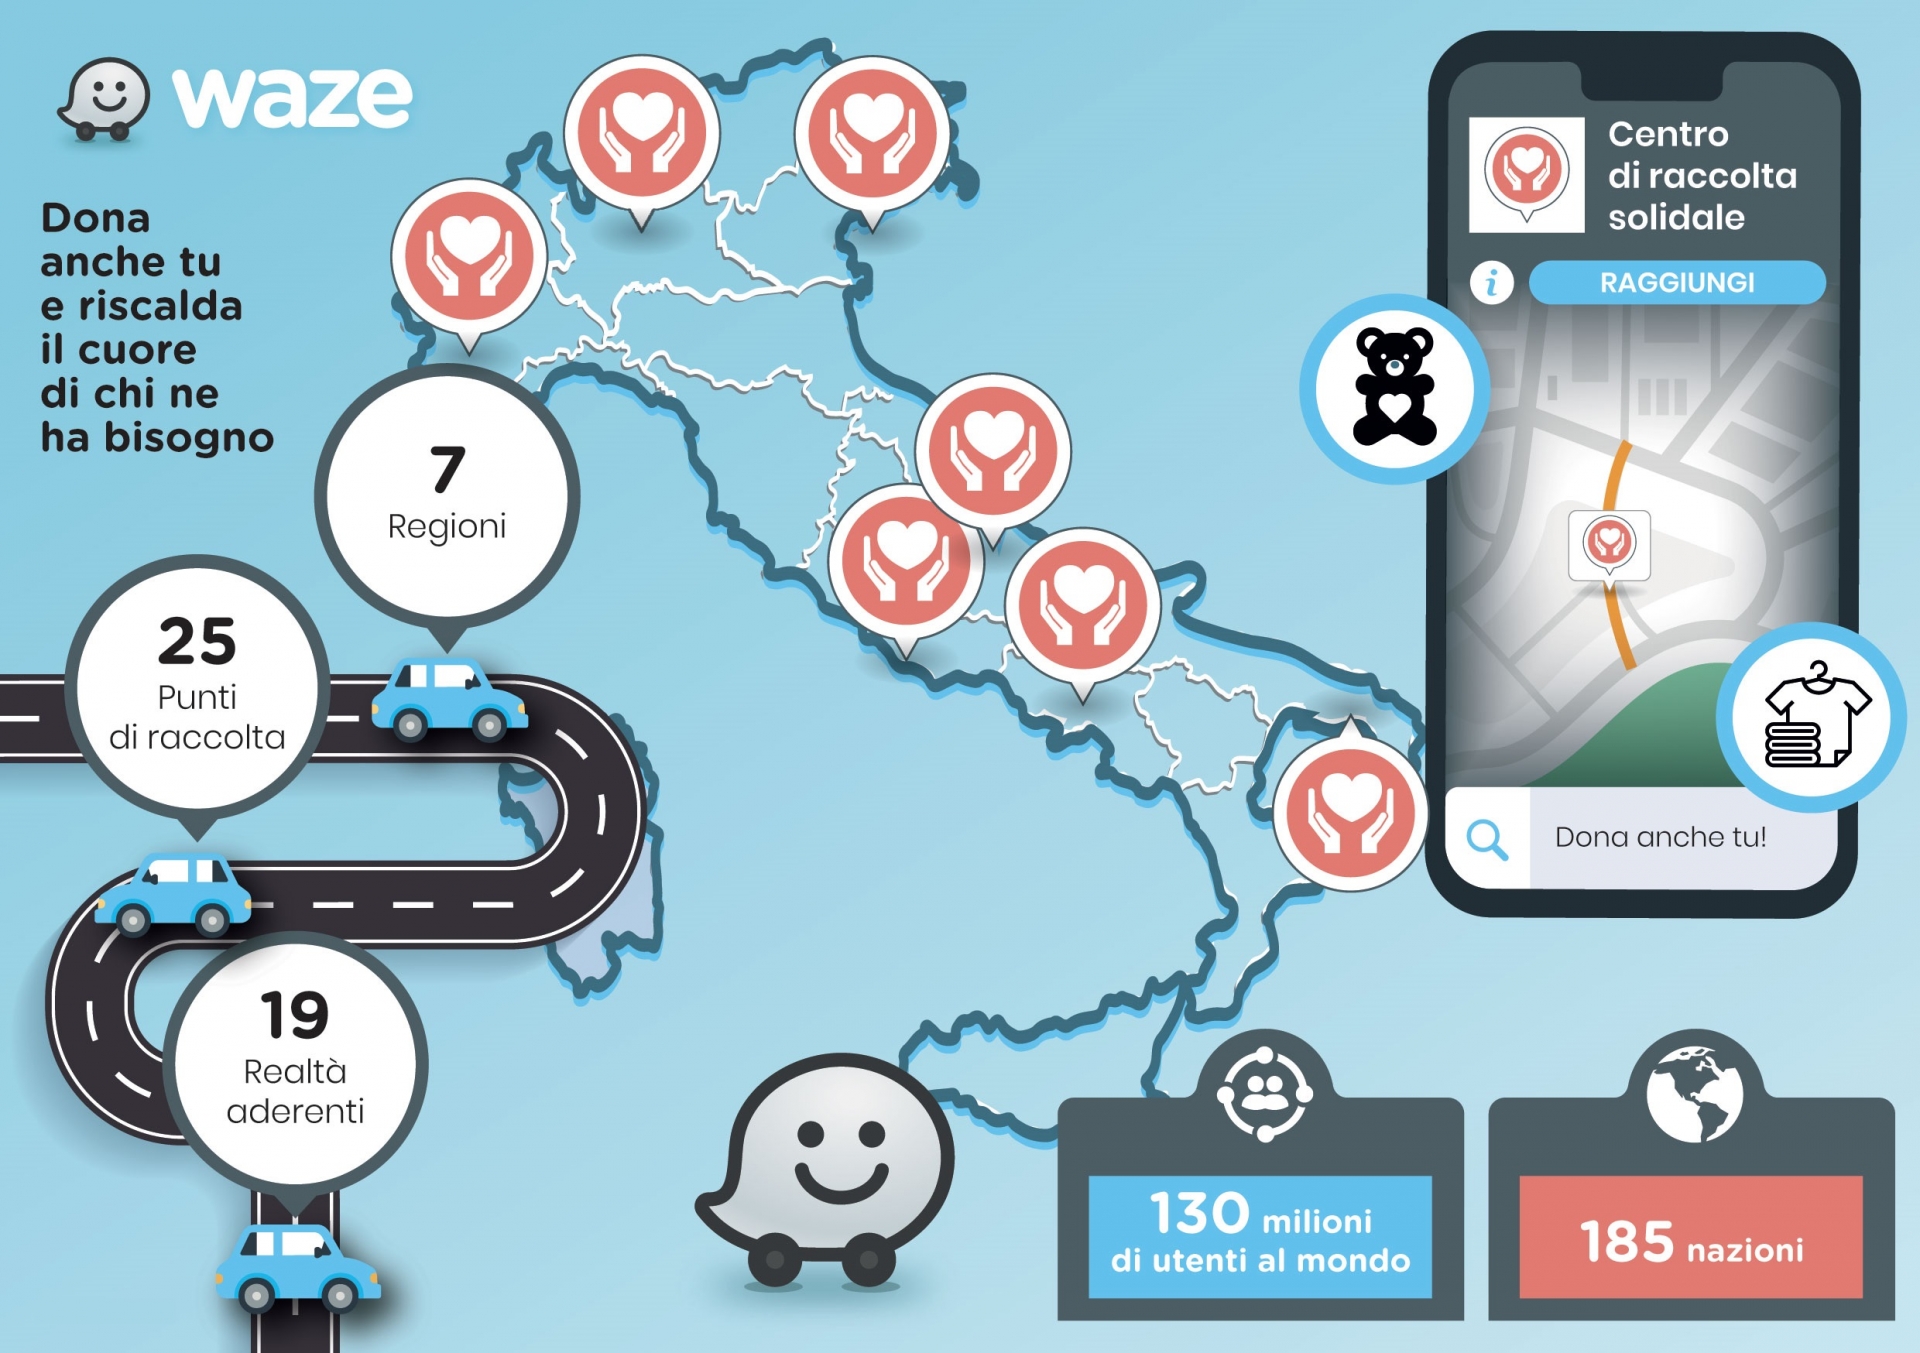 Waze e CRI Milano insieme per la raccolta coperte per i senza dimora